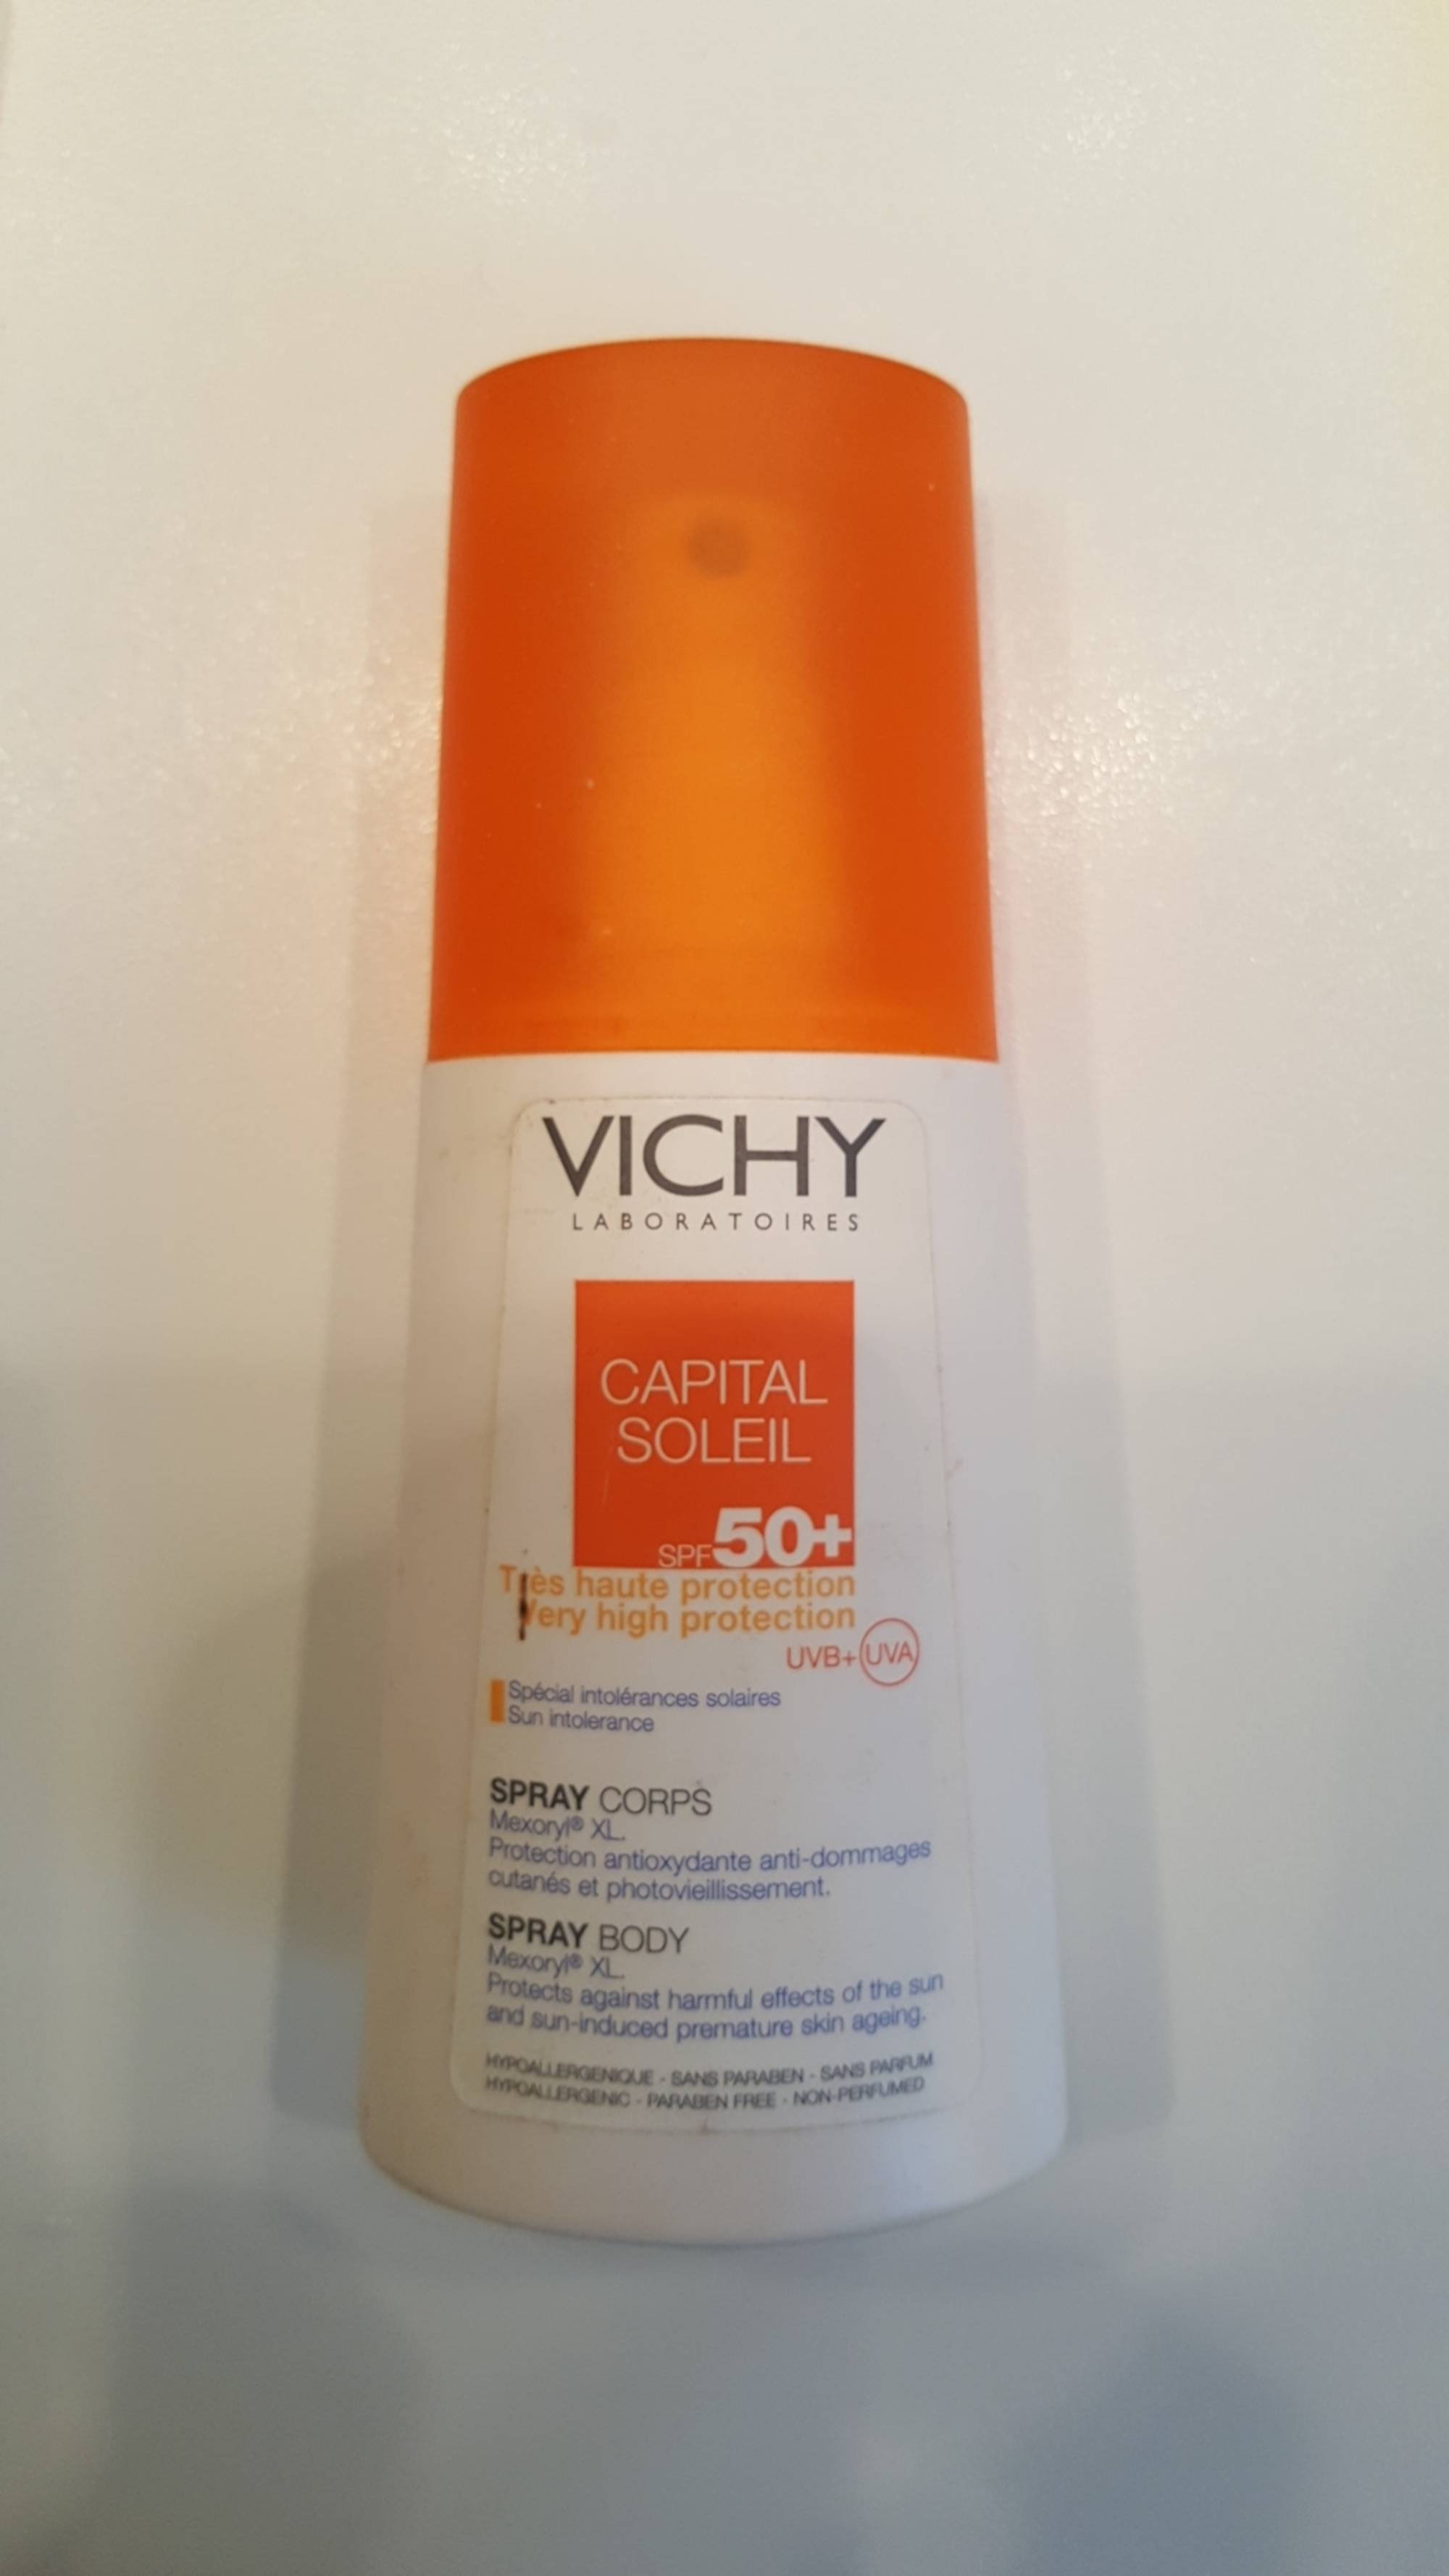 VICHY - Capital soleil spf 50+ 